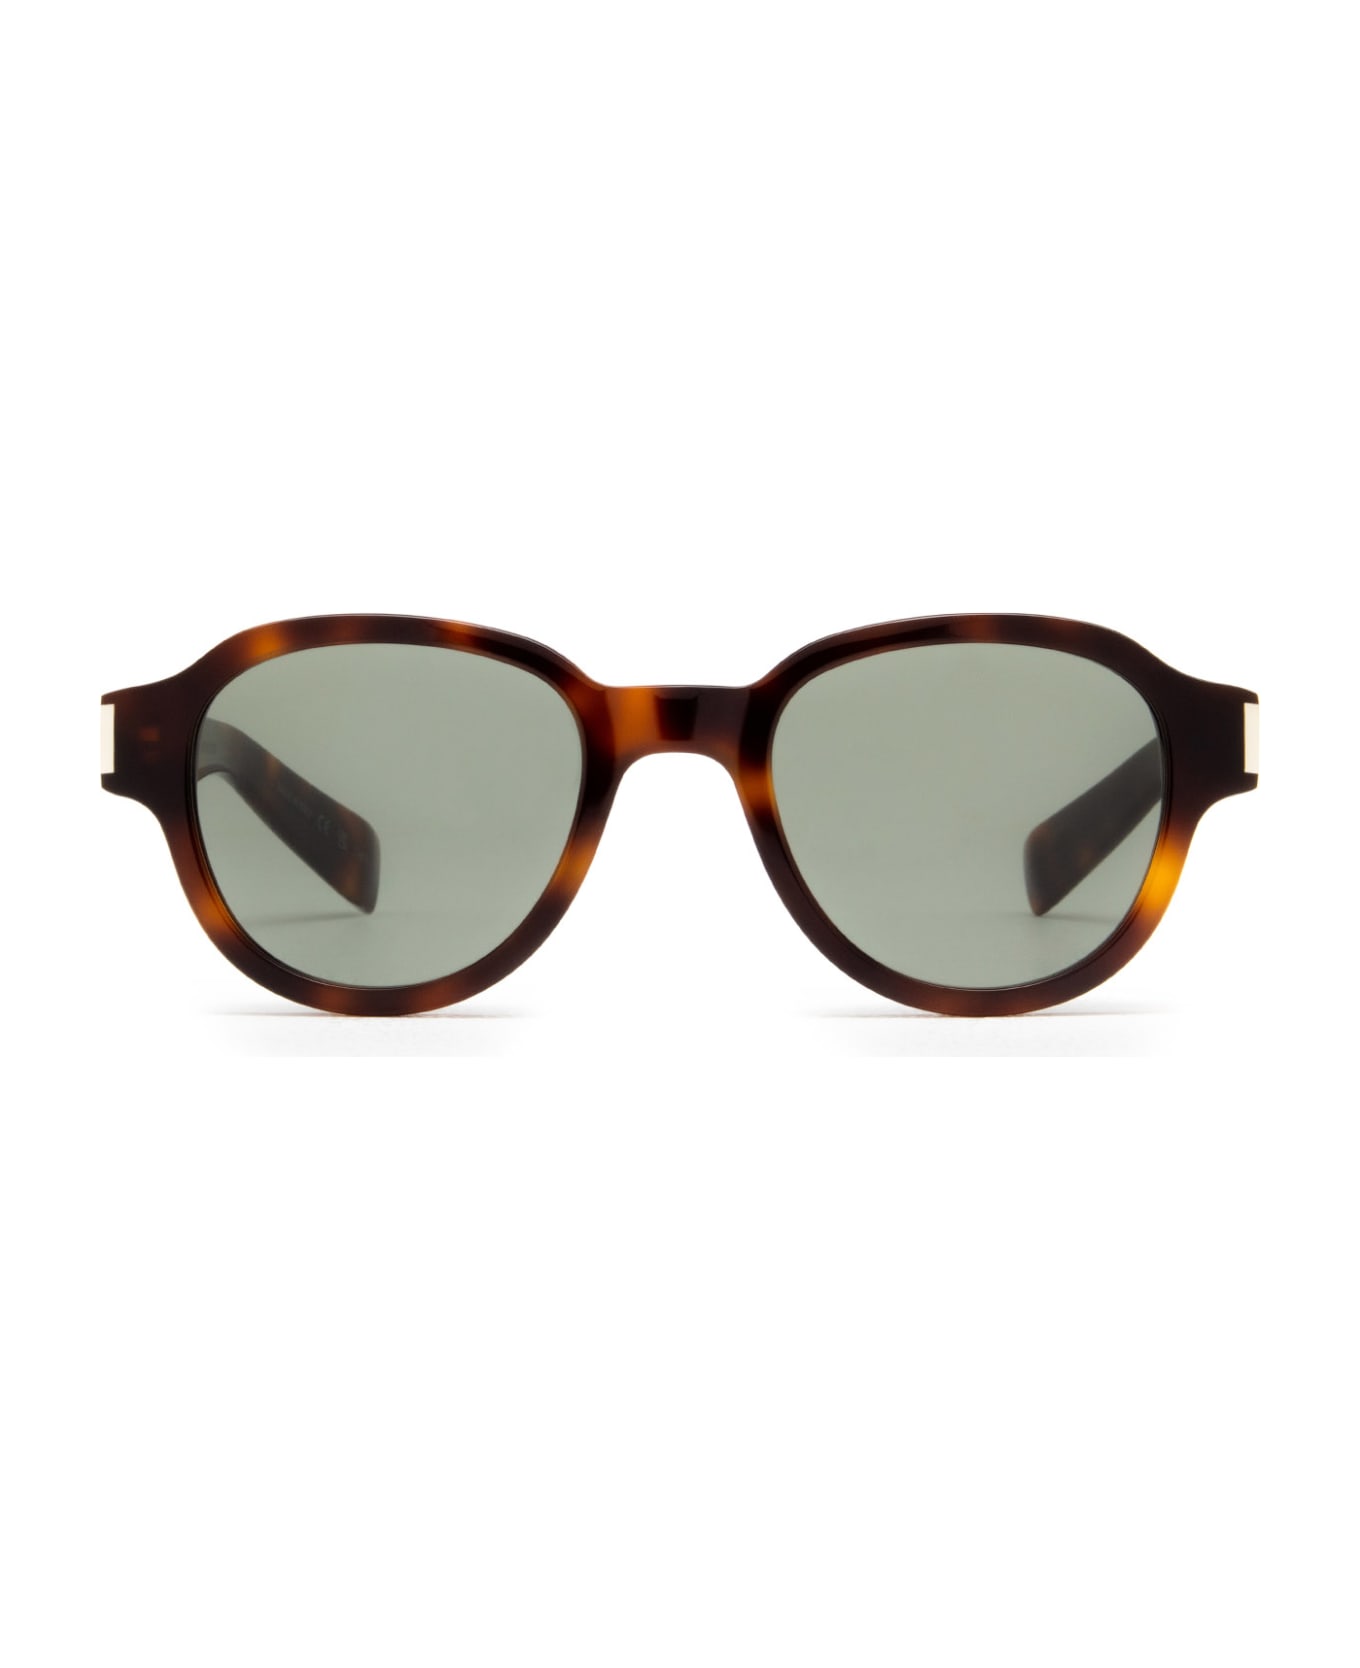 Saint Laurent Eyewear Sl 546 Havana Sunglasses - Havana